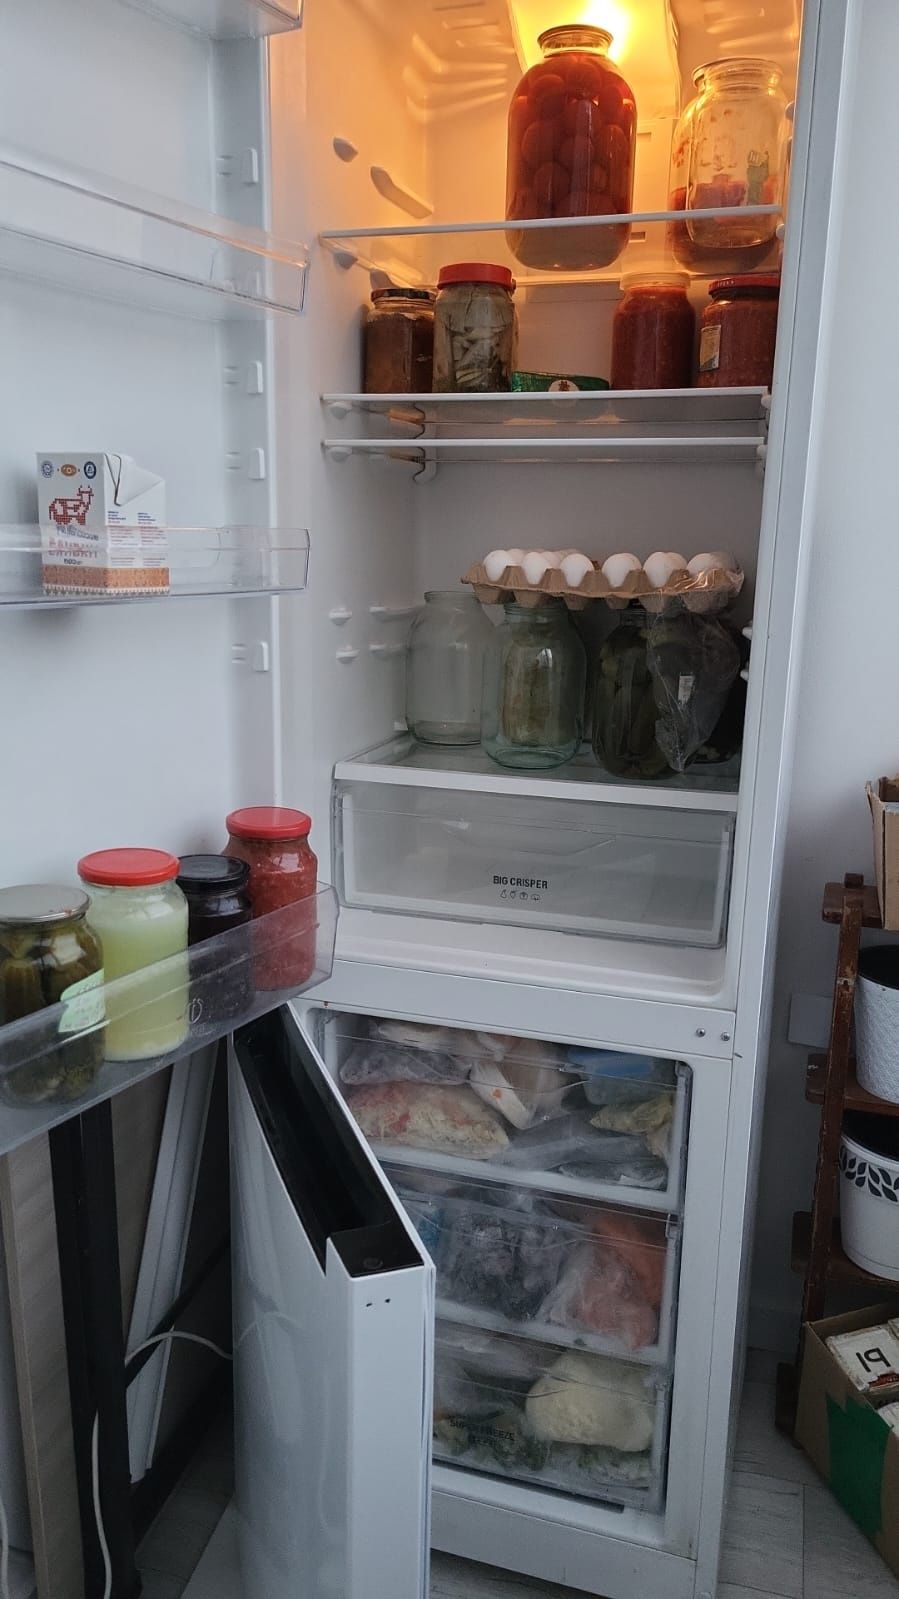 Холодильник
высота 1 м 92 см 
Всё соответствует фотография м
В отлично